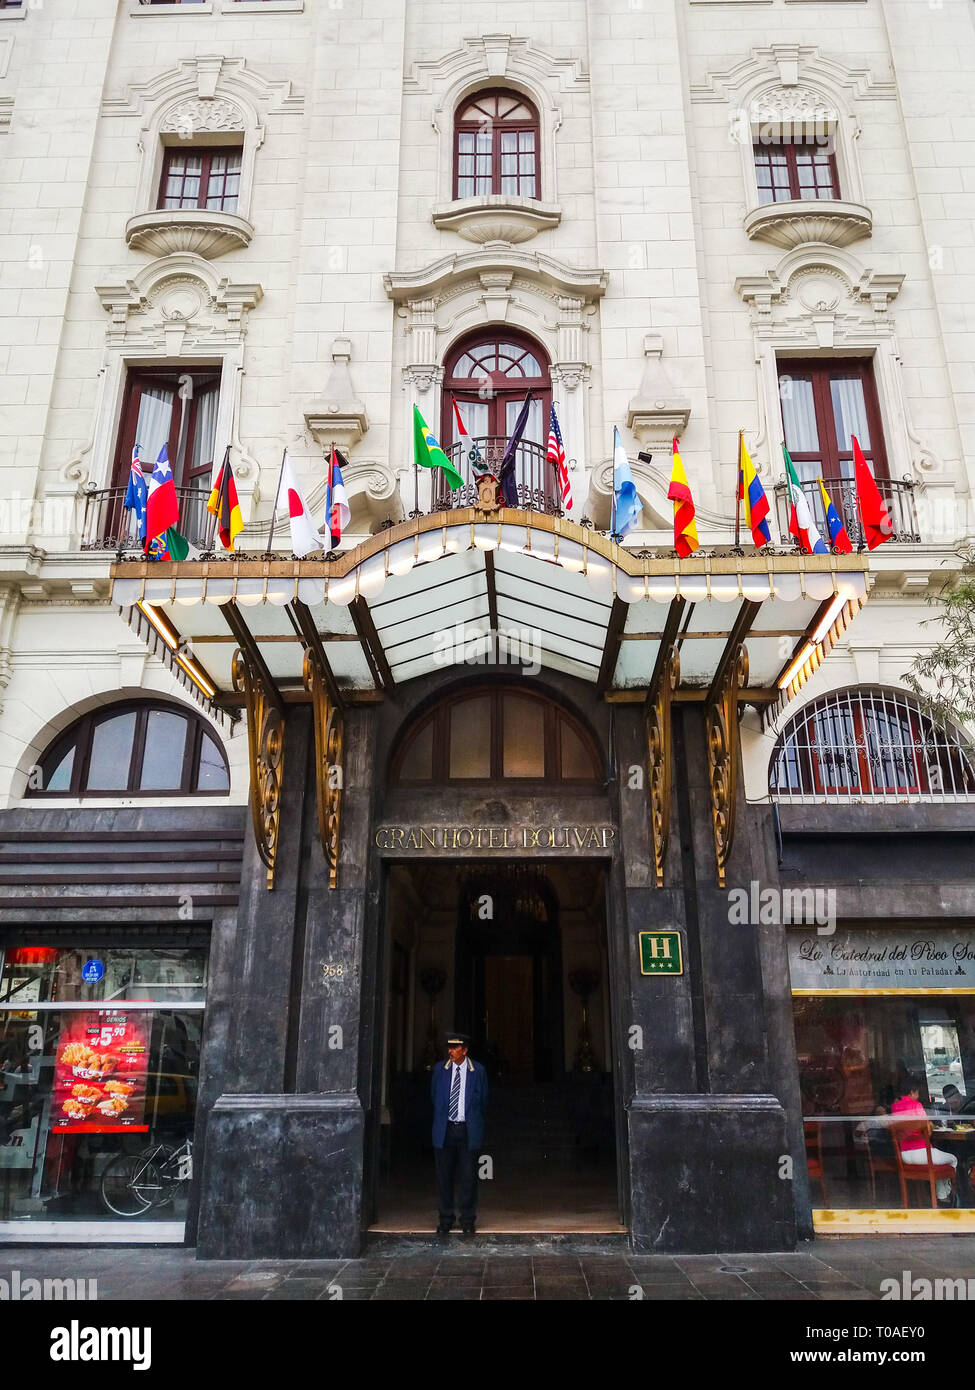 Lima, Perú Enero 24th, 2018 : Gran Hotel Bol var, este gran hotel de la década de 1920, que es un monumento histórico, está a 2 minutos a pie de la Plaza San Martín. Foto de stock